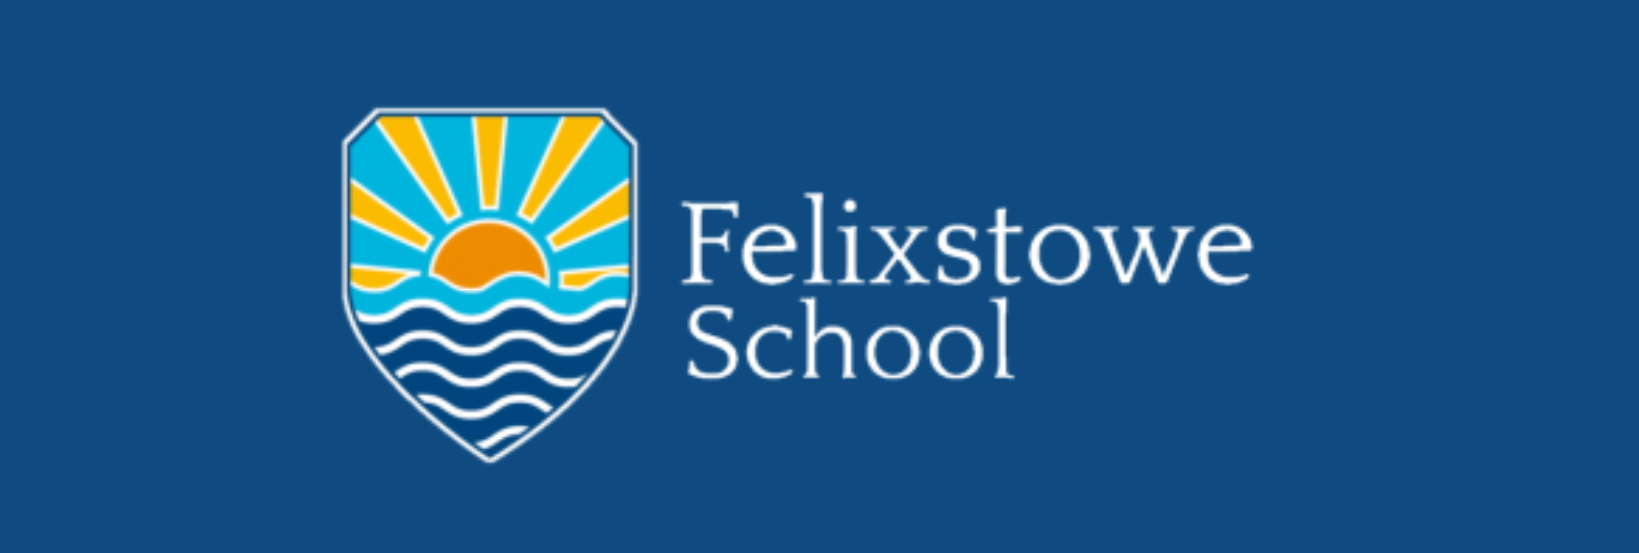 Felixstowe School